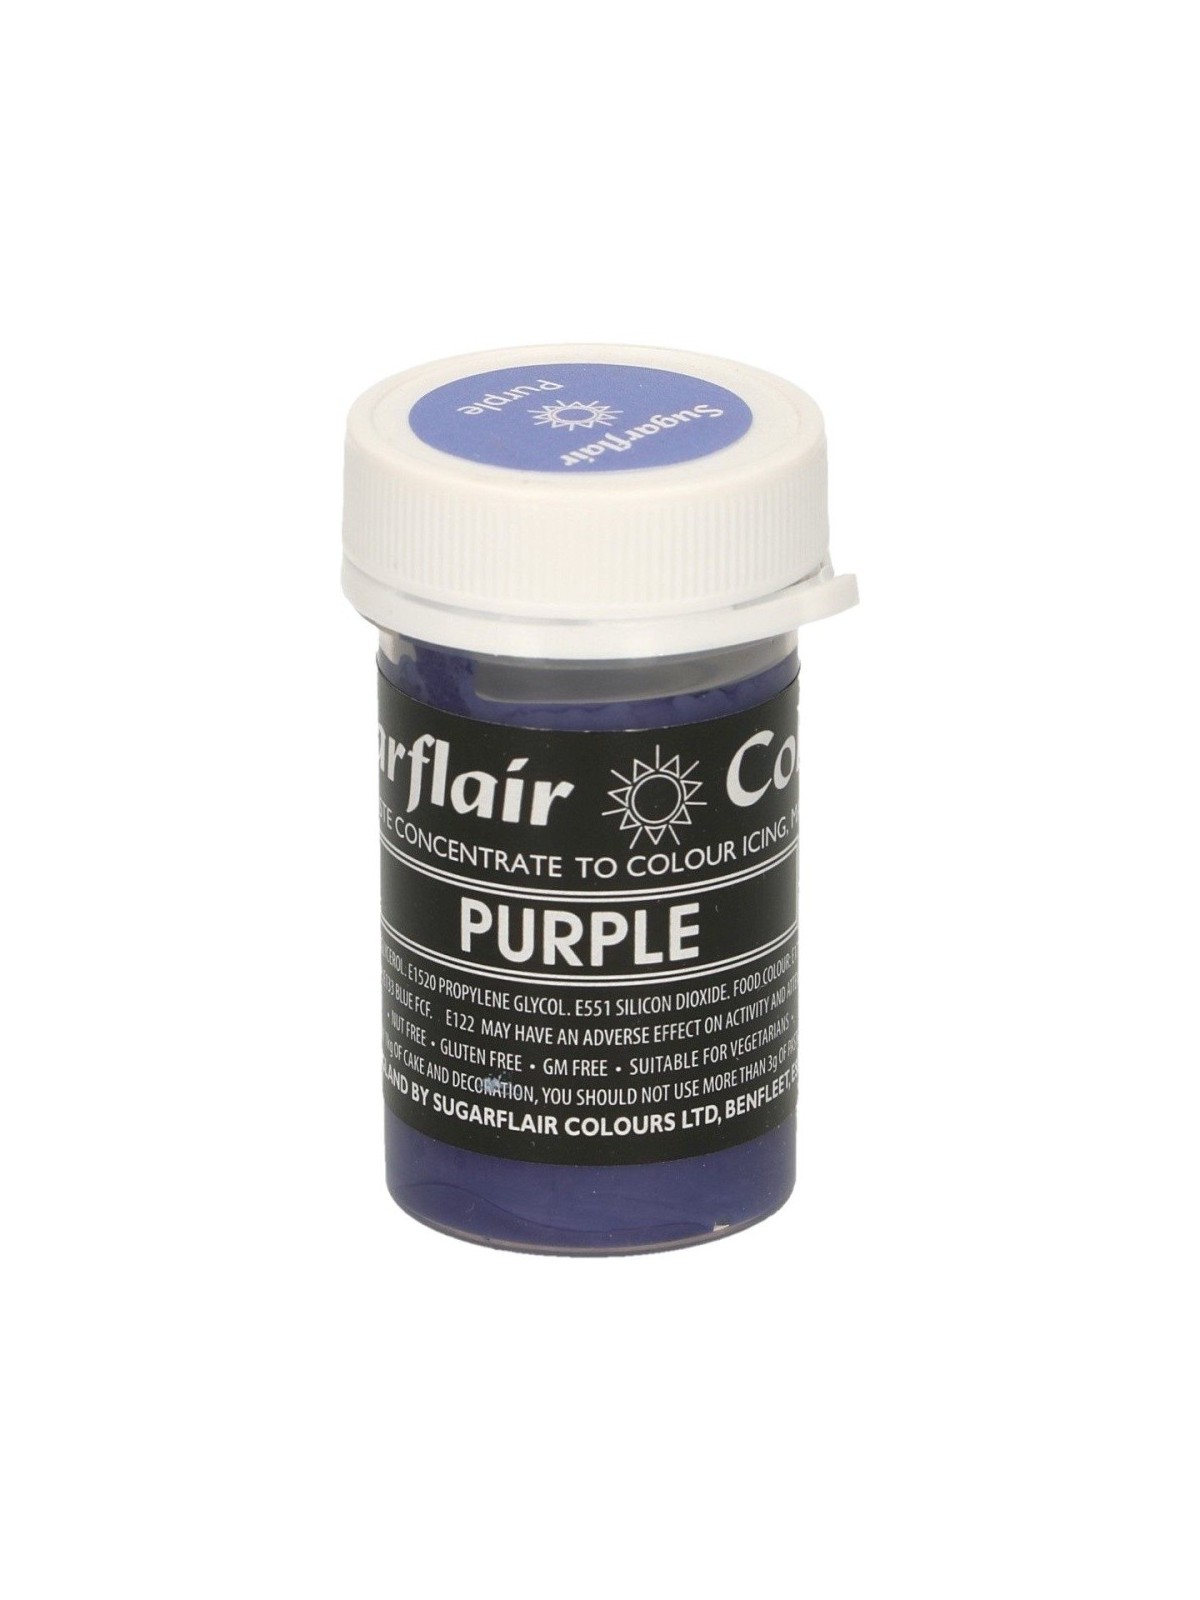 Sugarflair Gelfarbe purple  - 25g